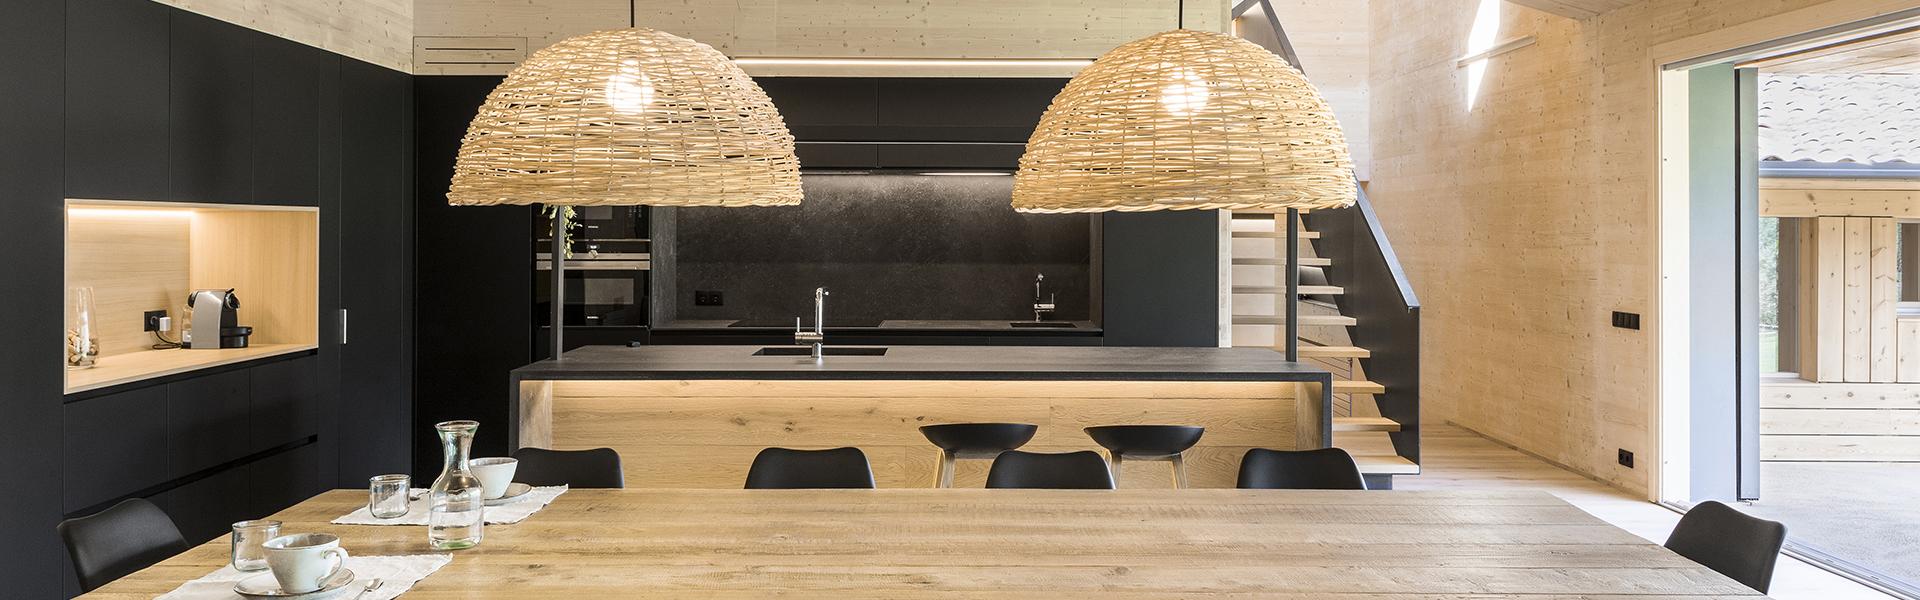 Cocina negra con isla y abierta al salón equipada con muebles diseñados por Santos